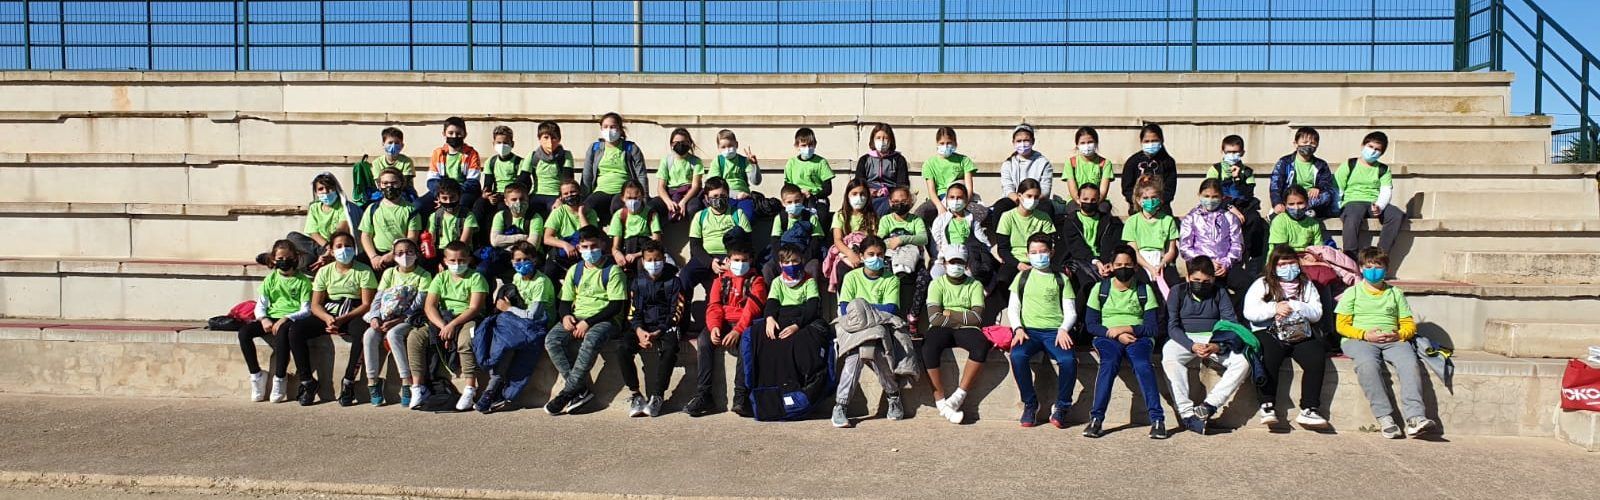 El Consell Municipal d’Esports de Vinaròs enceta les Jornades Escolars curs 2021-22